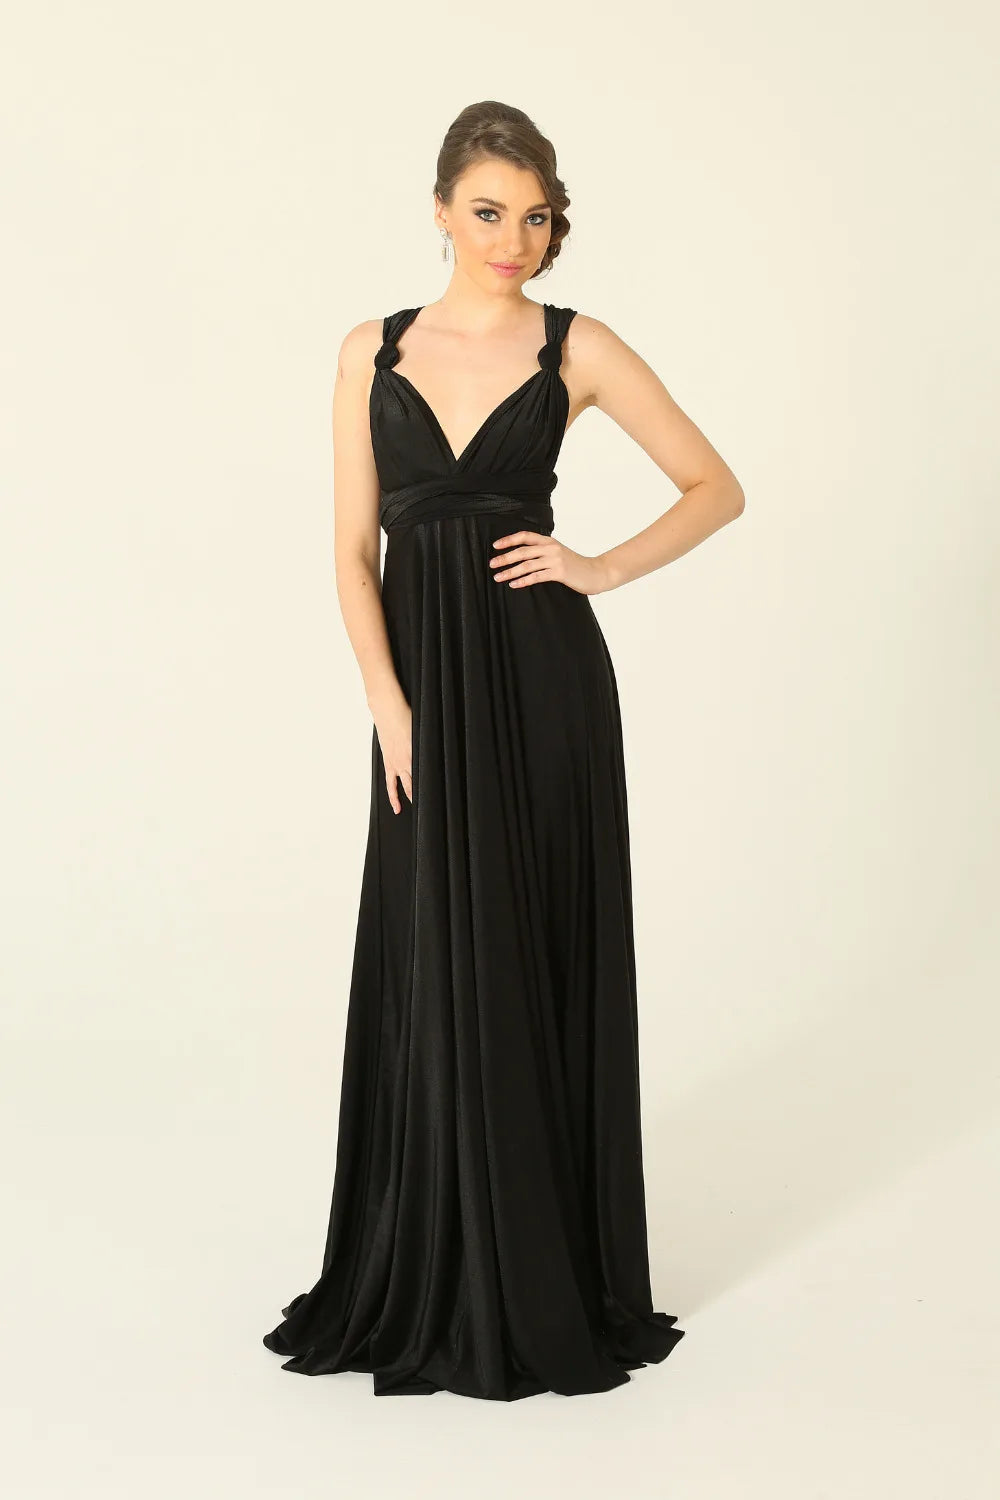 PO31 Wrap dress - Black size L (size 18-26) (Ready to ship!)